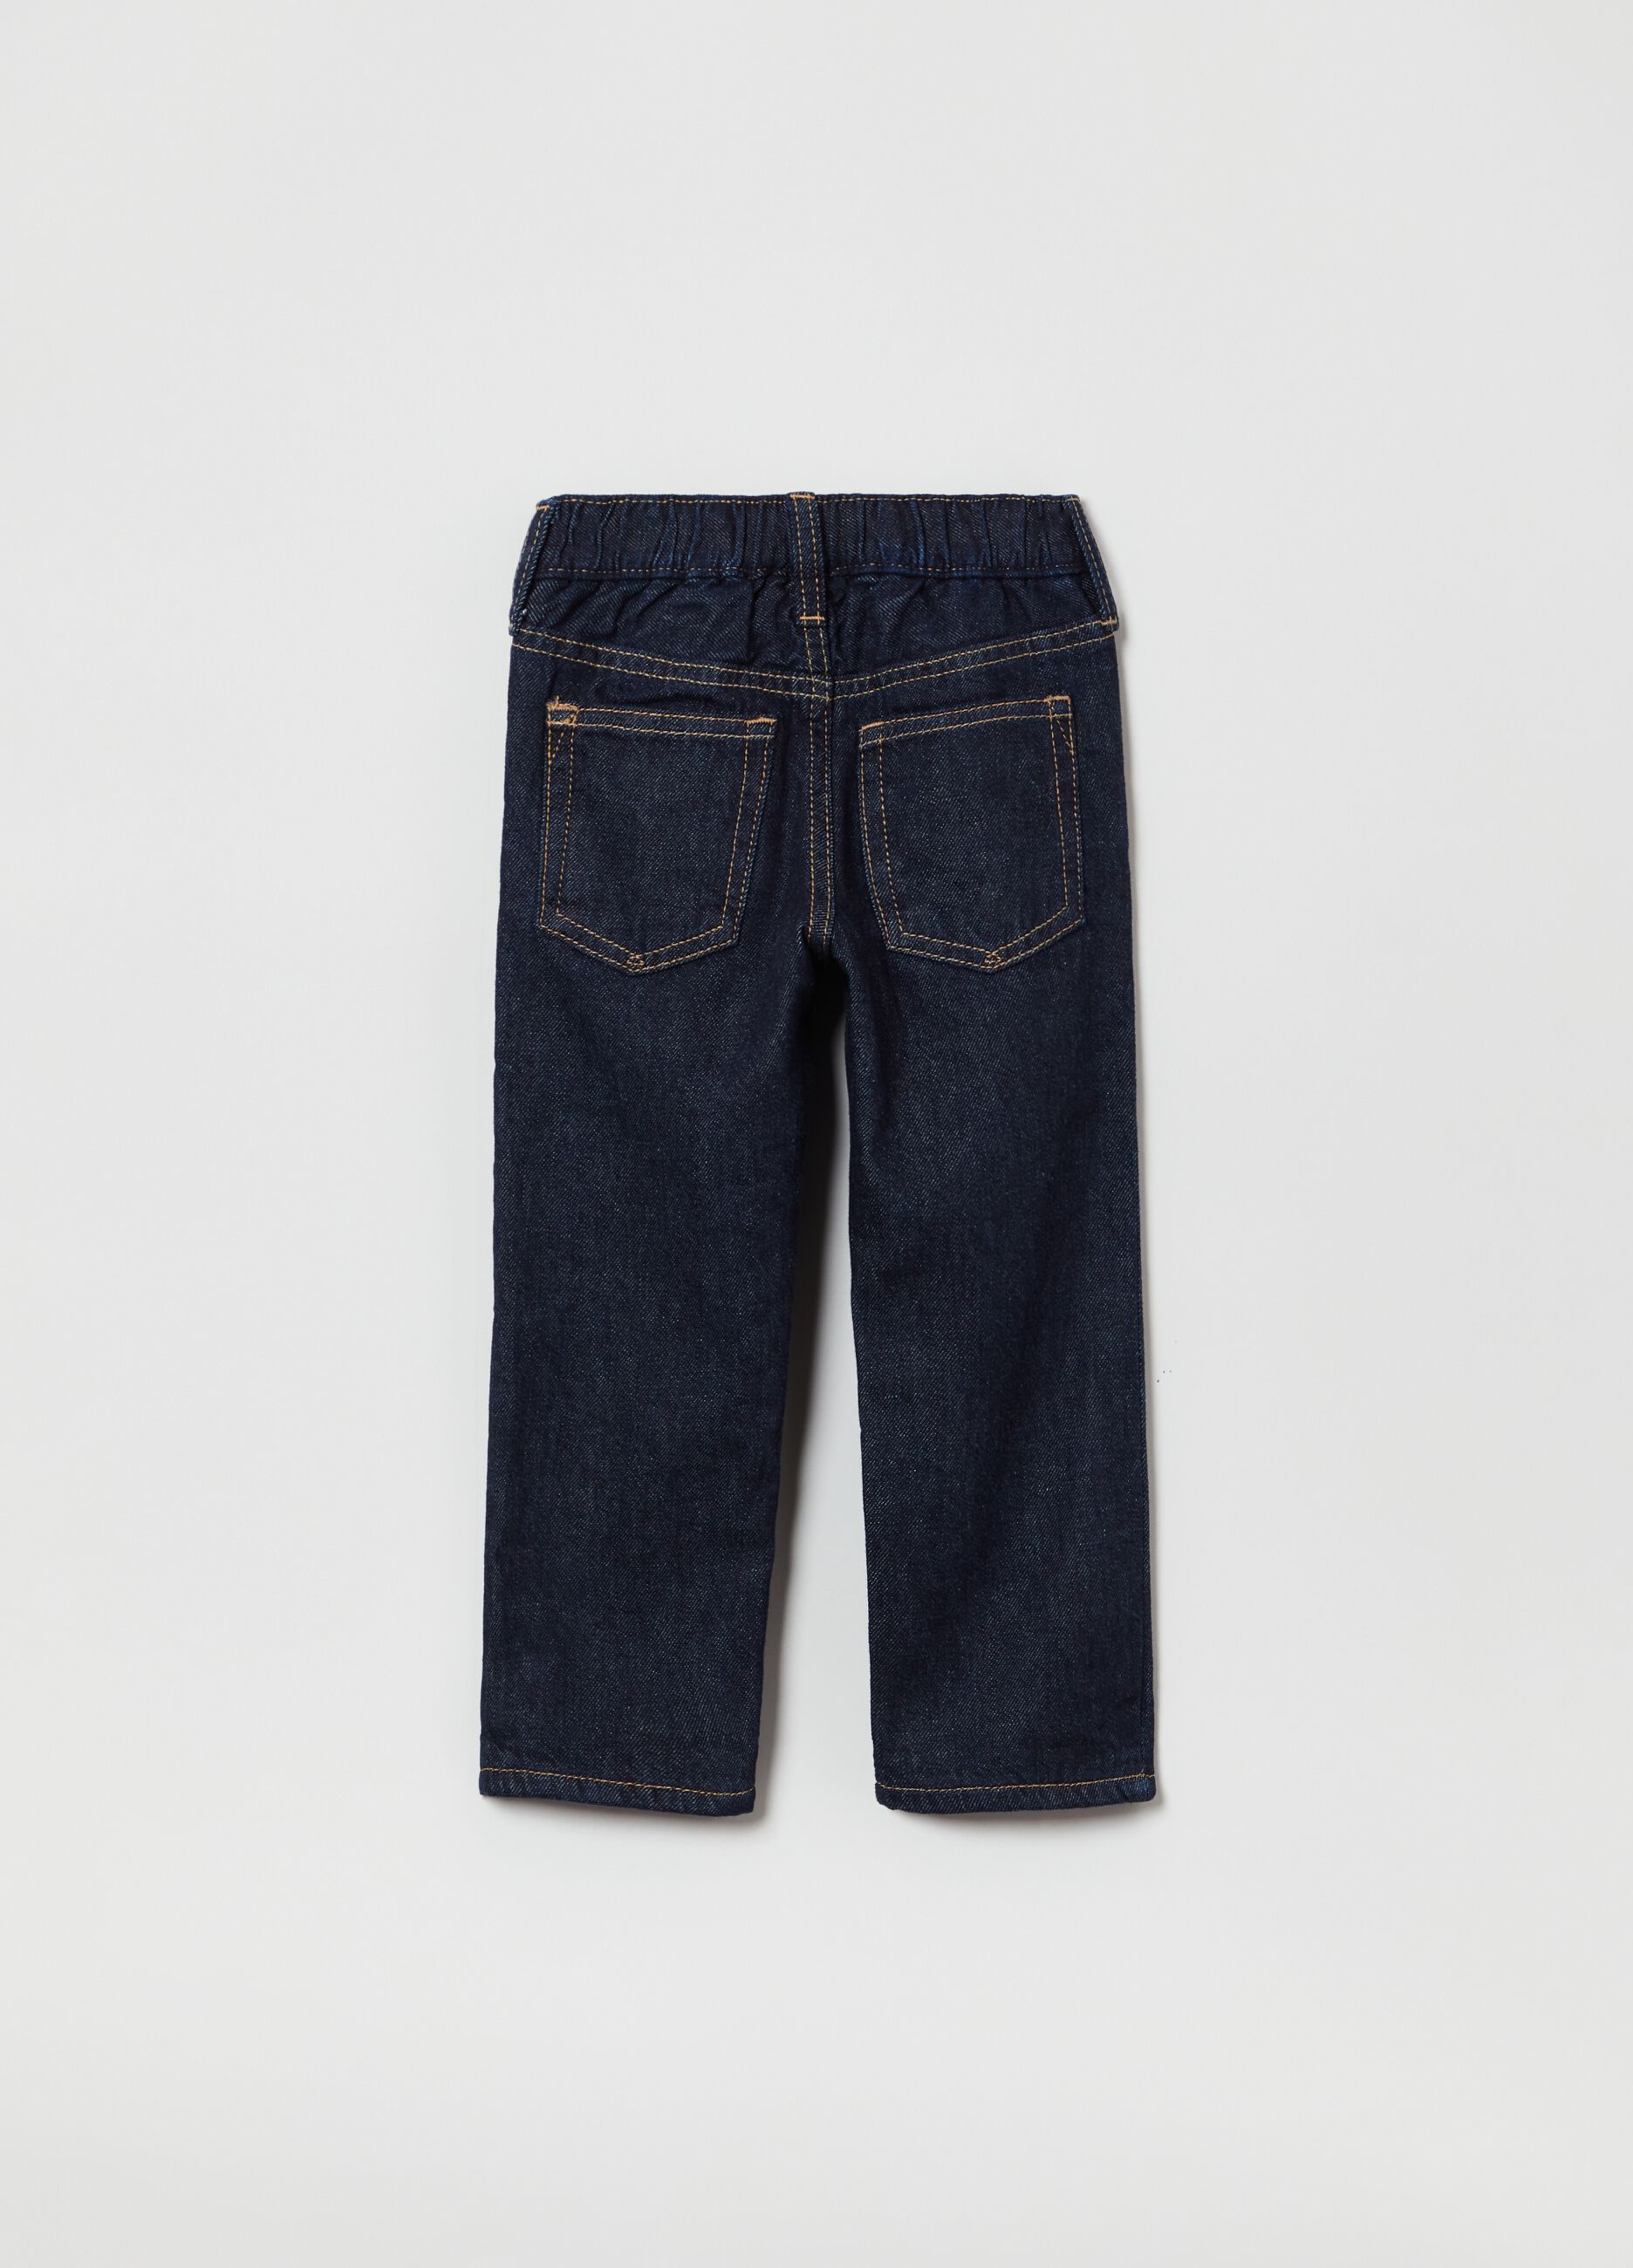 Five-pocket jeans._1